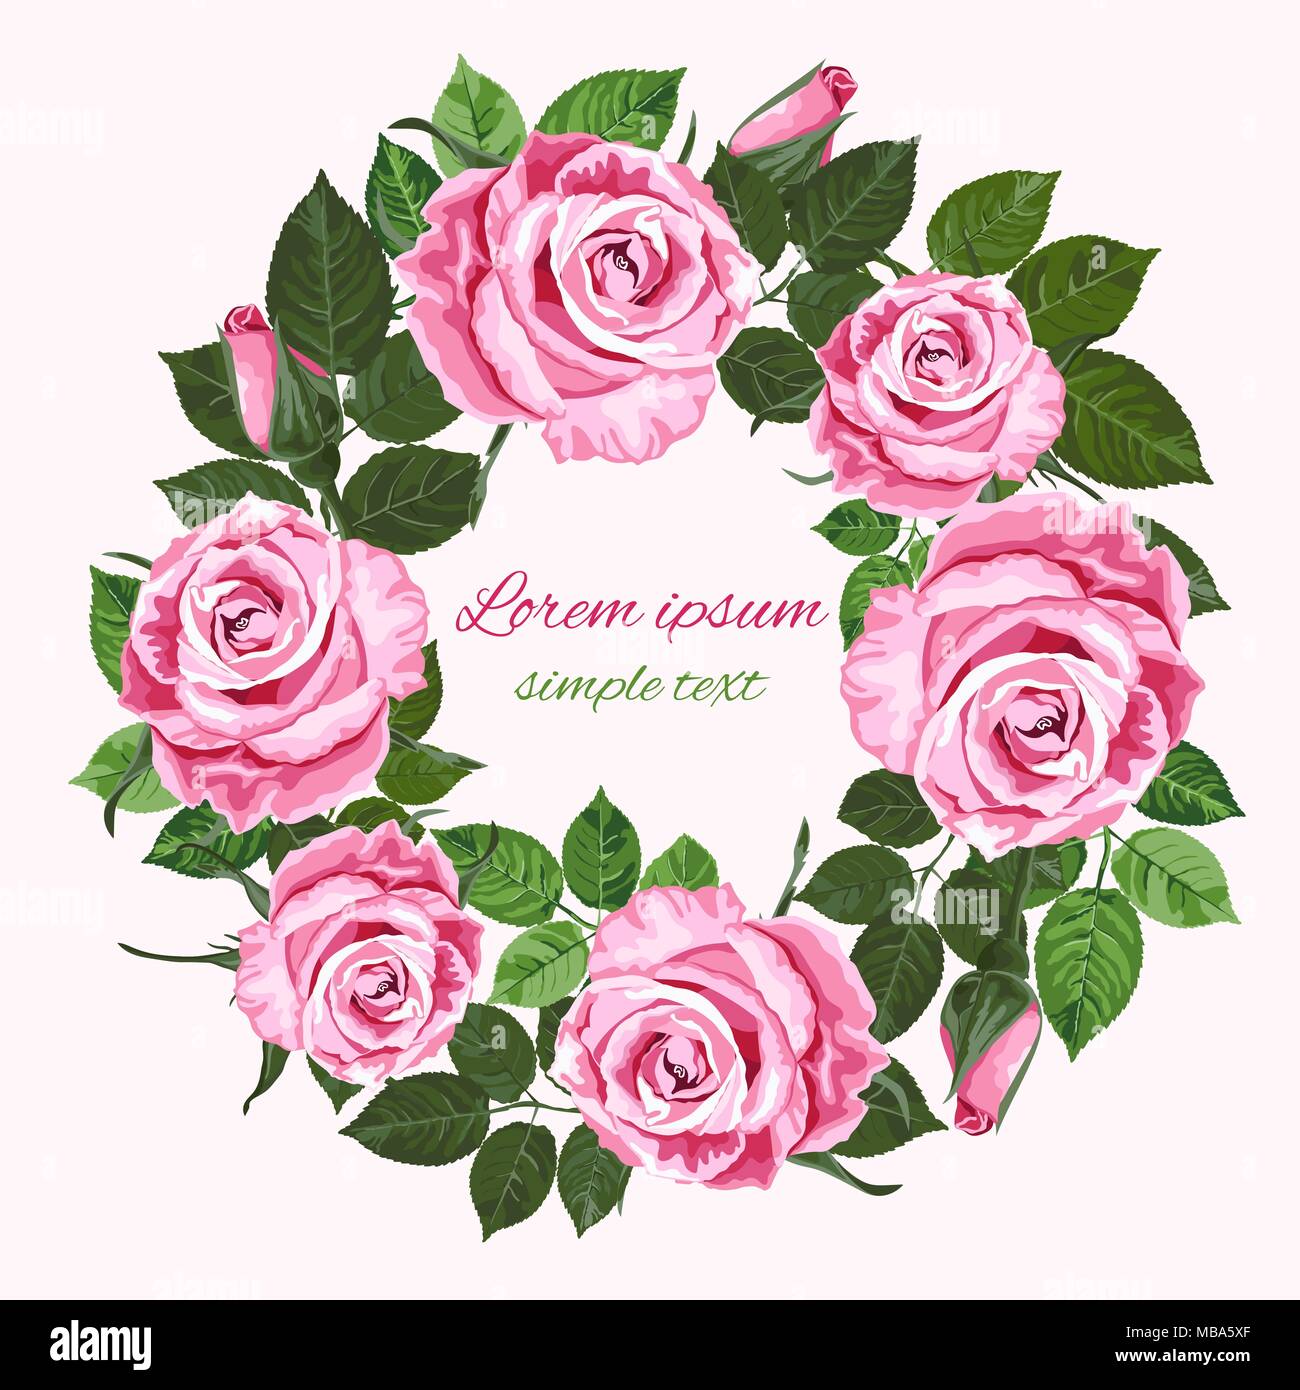 Vector save the date invitations de mariage avec couronne de roses roses sur fond blanc. Floral design pour carte de souhaits Illustration de Vecteur